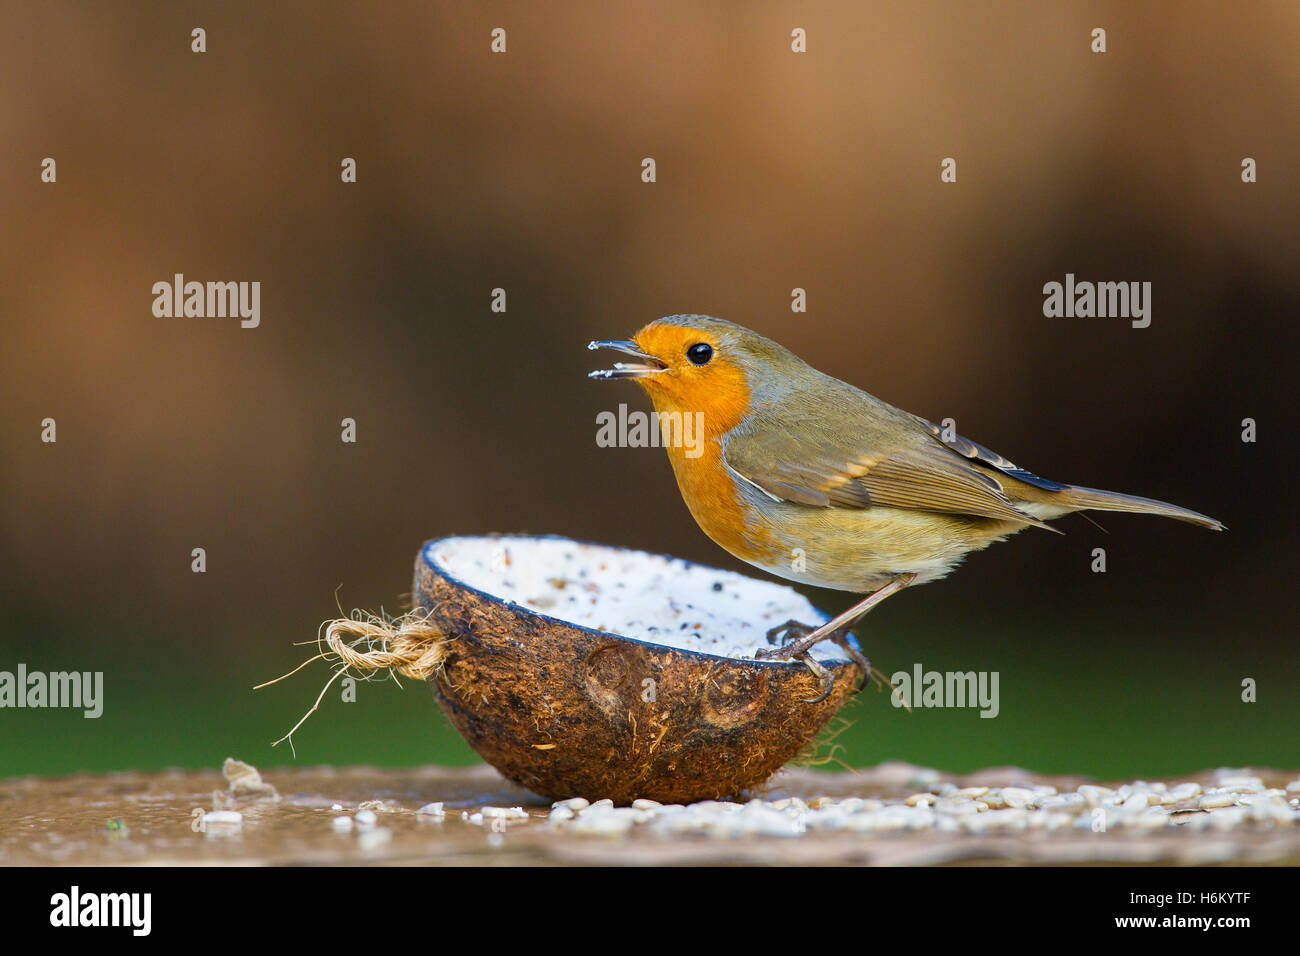 Unione robin (Erithacus rosolia) alimentazione per adulti sul grasso dal guscio di noce di cocco, Norfolk, Inghilterra, Regno Unito Foto Stock